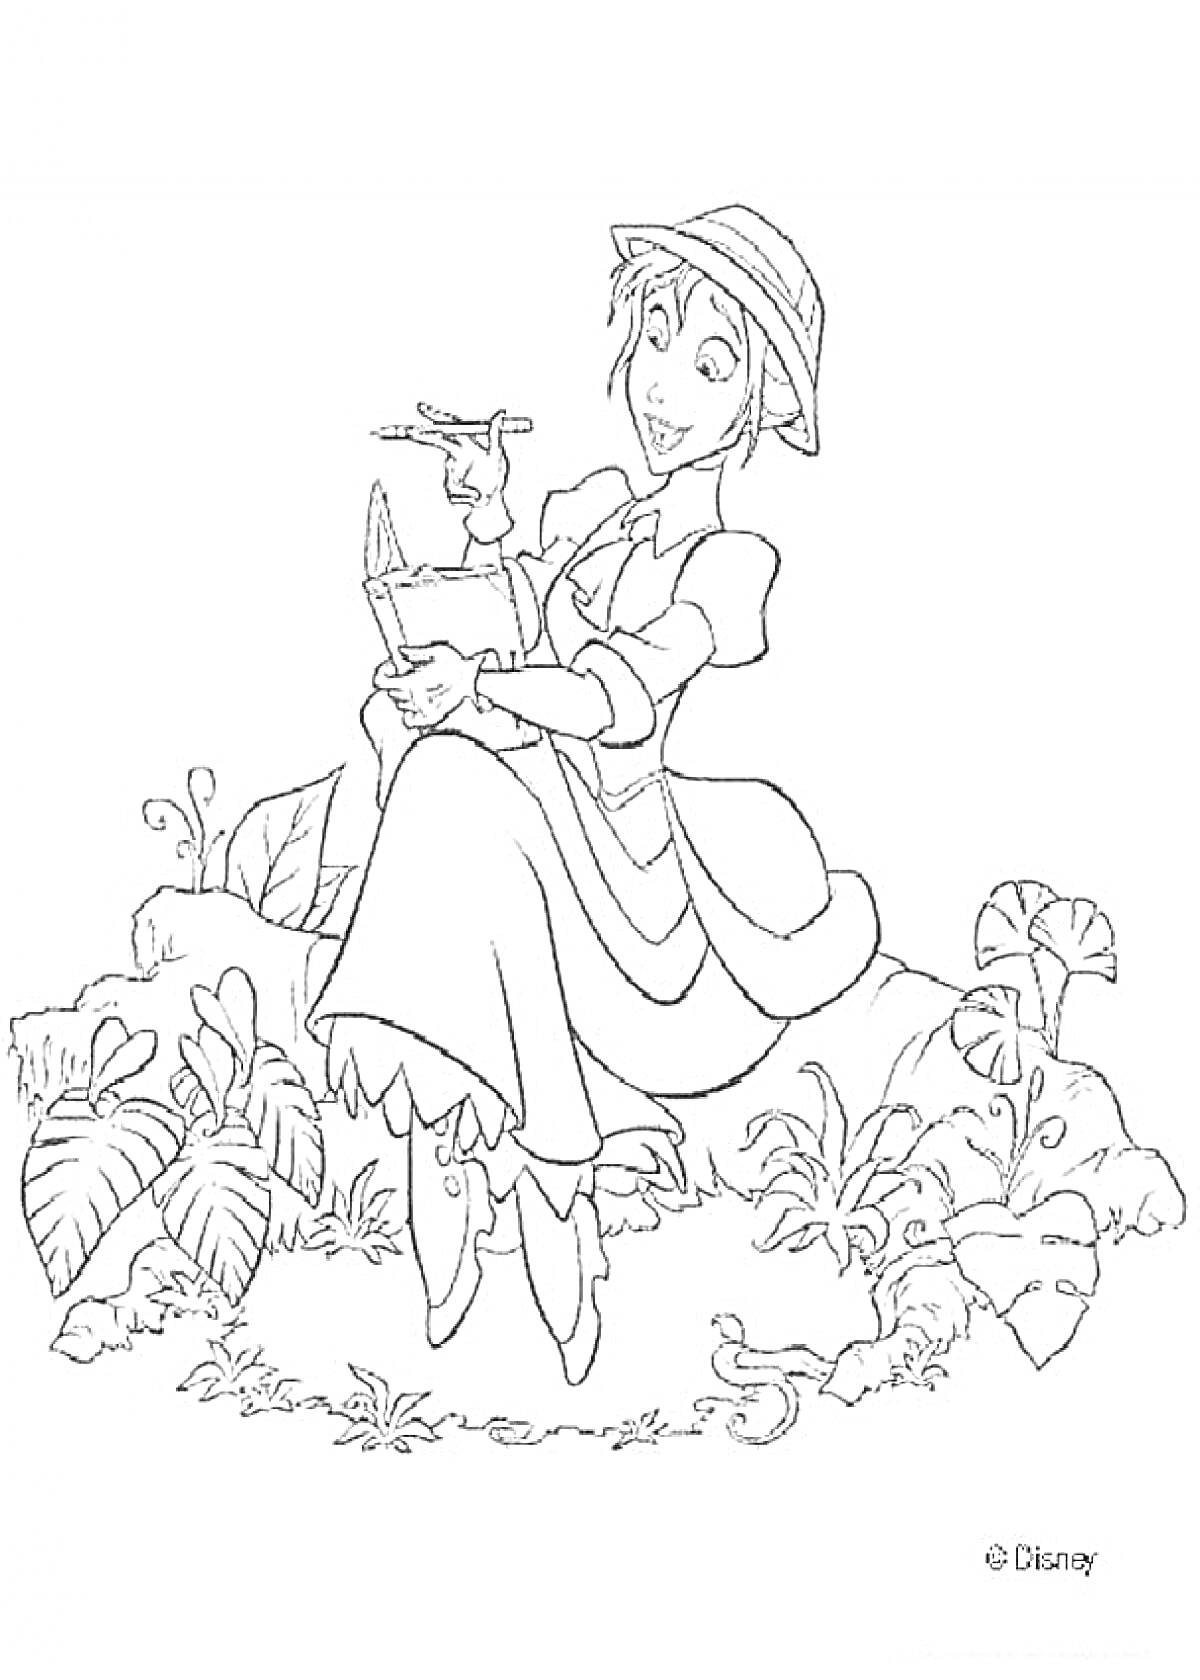 Женщина в шляпе, держащая предметы в руке и сидящая на камне среди растительности